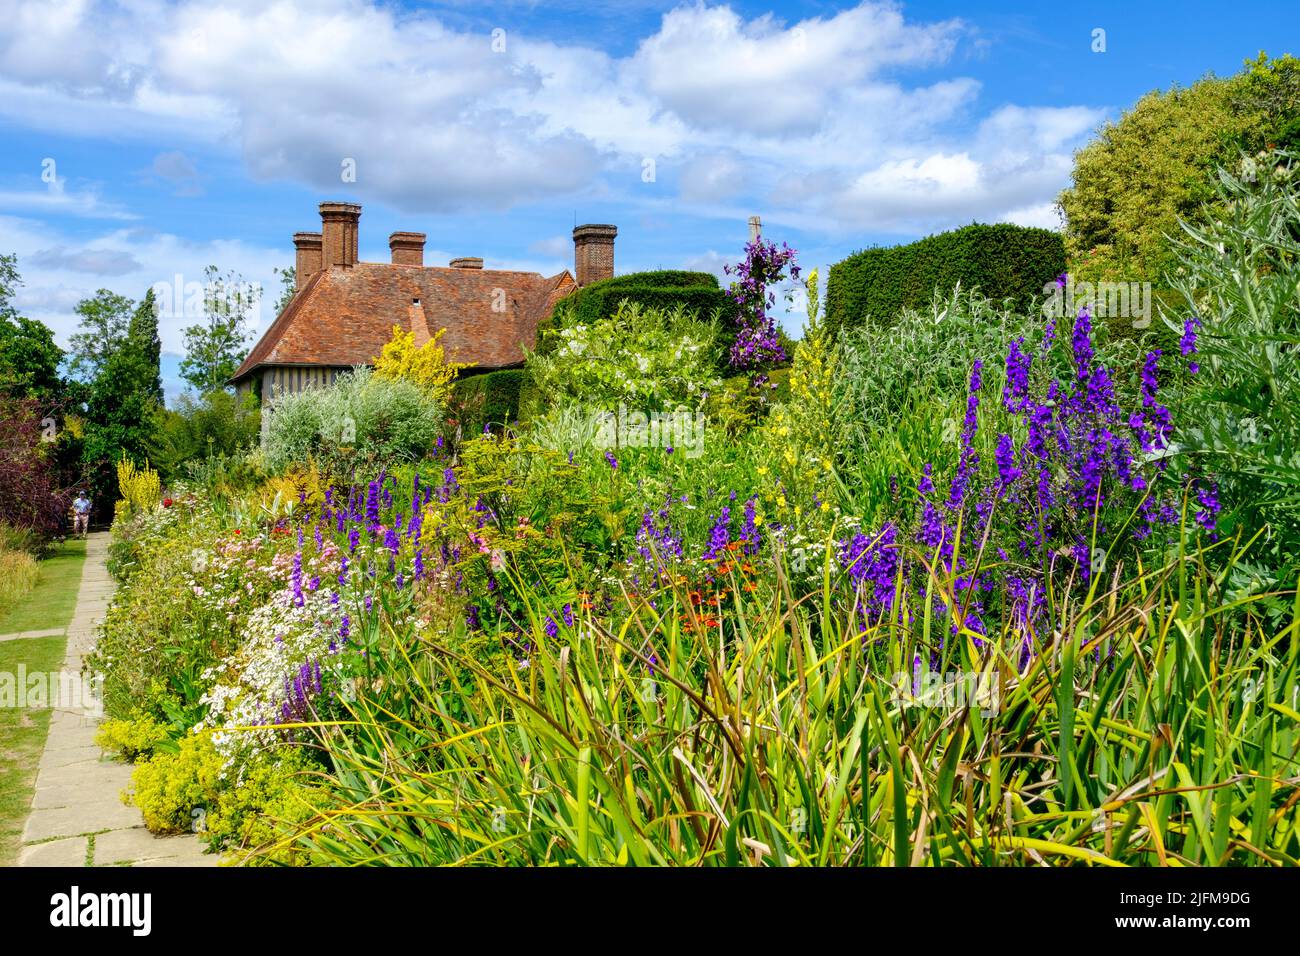 Great Dixter garden, East Sussex, UK Stock Photo